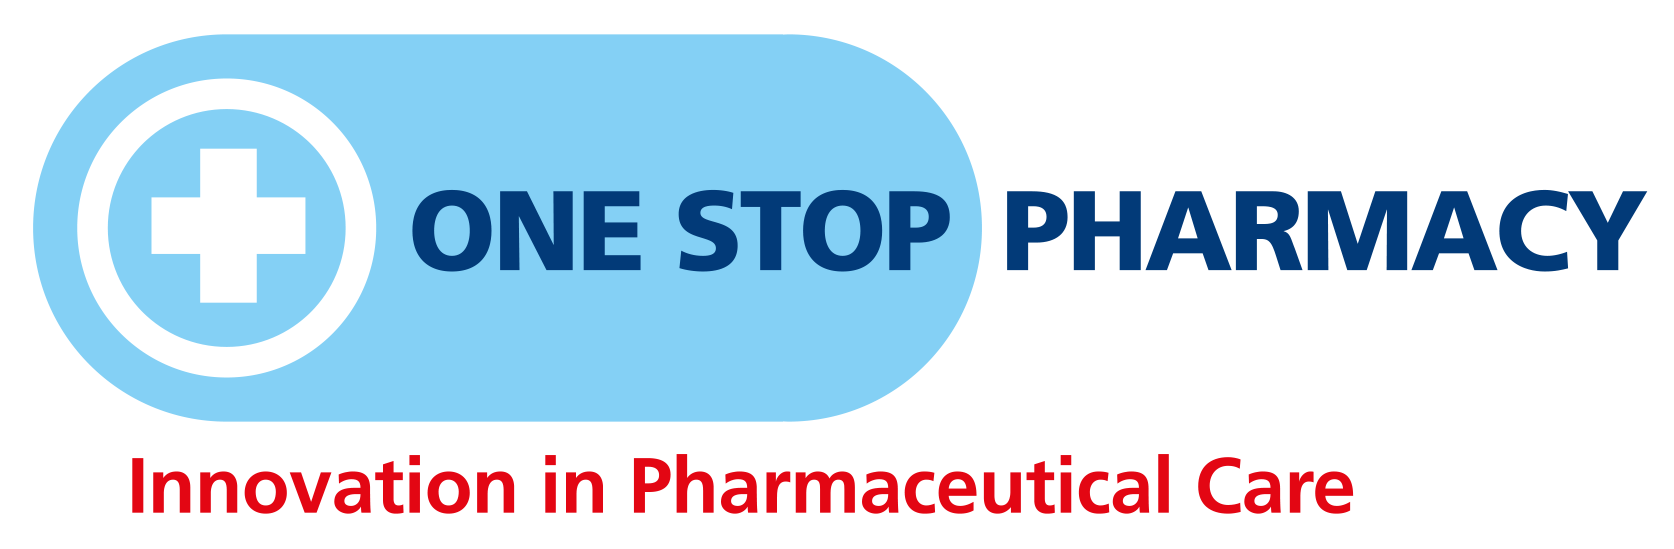 One_Stop_Pharmacy_Logo_1674x549